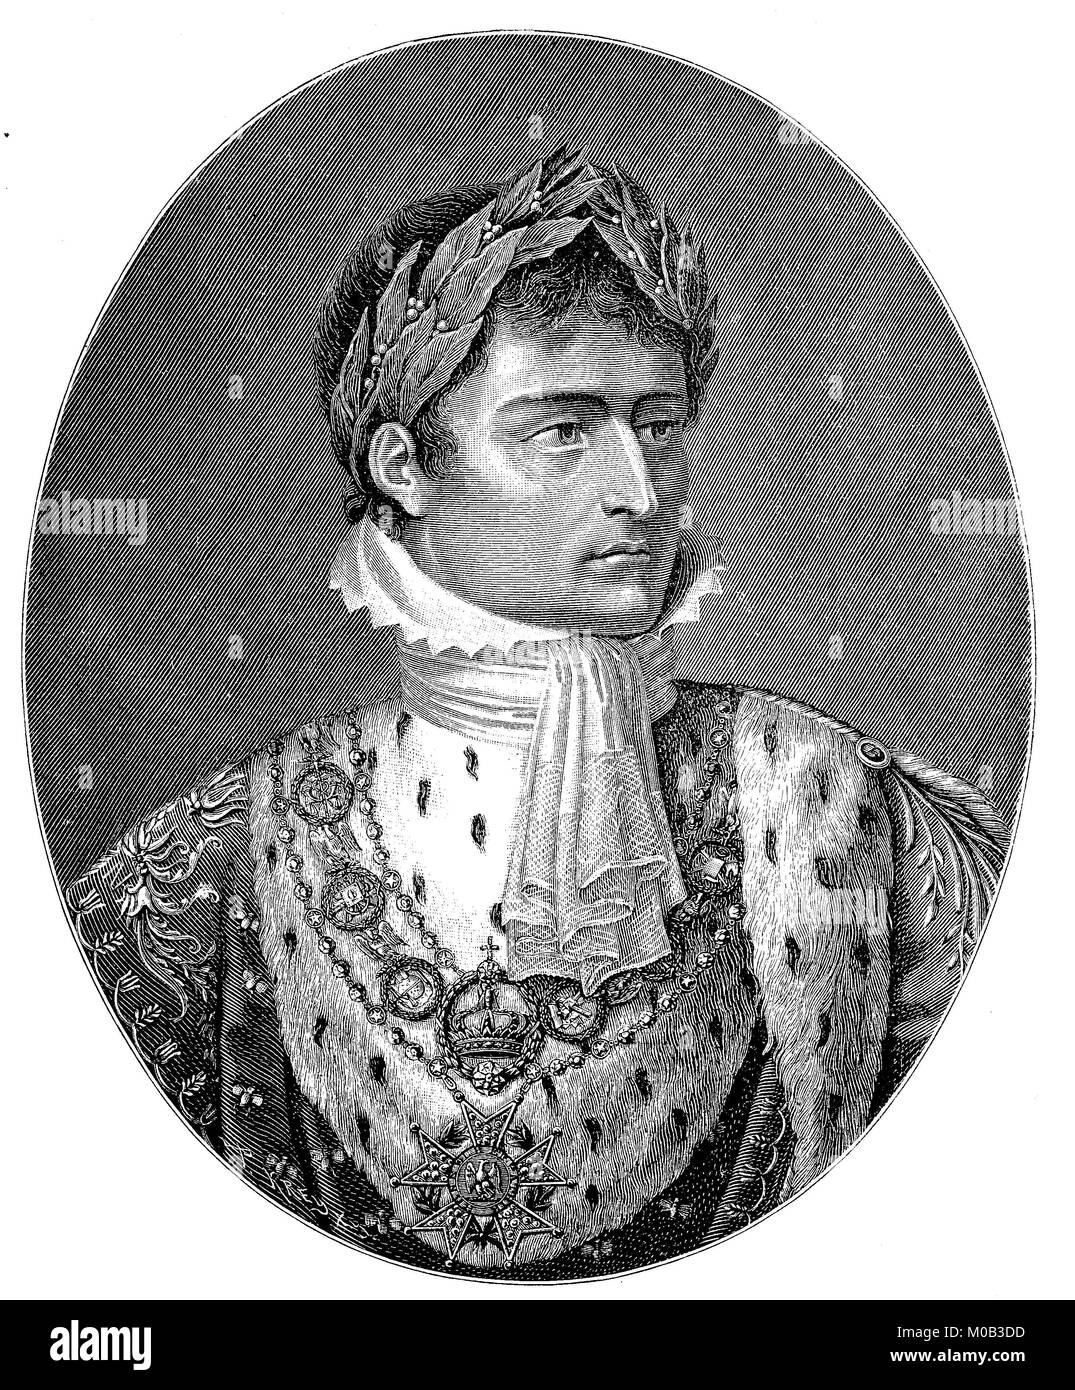 Napoléon Bonaparte, que l'Empereur Napoléon I, 15 août 1769 - 5 mai 1821, était un général français, et l'empereur dictateur révolutionnaire numérique, l'amélioration de la reproduction d'une estampe originale de 1880 Banque D'Images